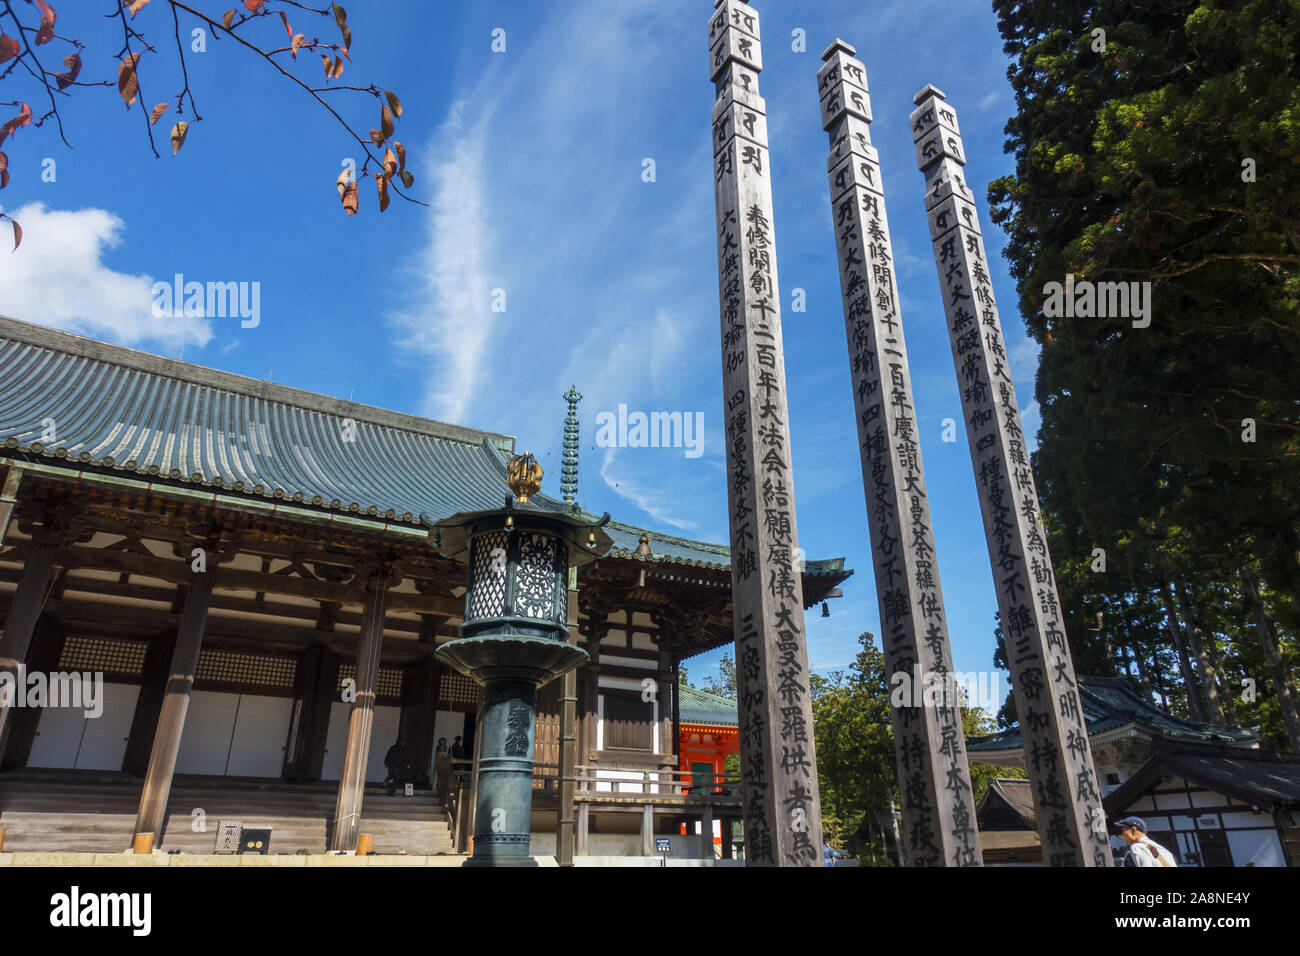 Präfektur Wakayama, Japan - 31. Oktober 2019: Mount Koya, der jedoch der gemeinhin übliche Name für ein riesiger Tempel Siedlung in der Präfektur Wakayama. Stockfoto